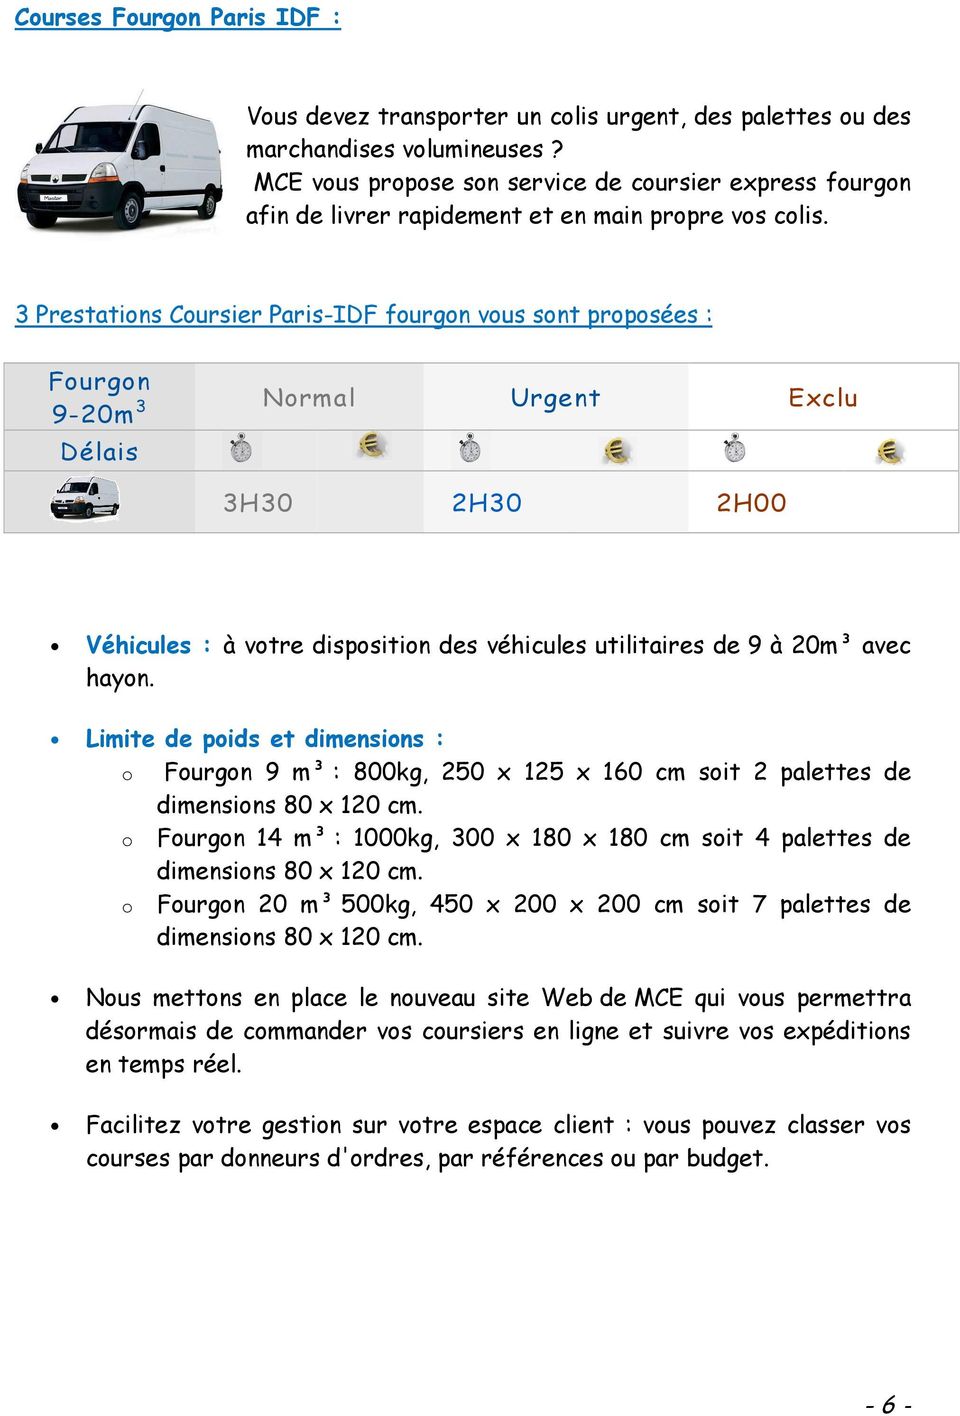 3 Prestations Coursier Paris-IDF fourgon vous sont proposées : Fourgon 9-20m 3 Normal Urgent Exclu Délais 3H30 2H30 2H00 Véhicules : à votre disposition des véhicules utilitaires de 9 à 20m³ avec